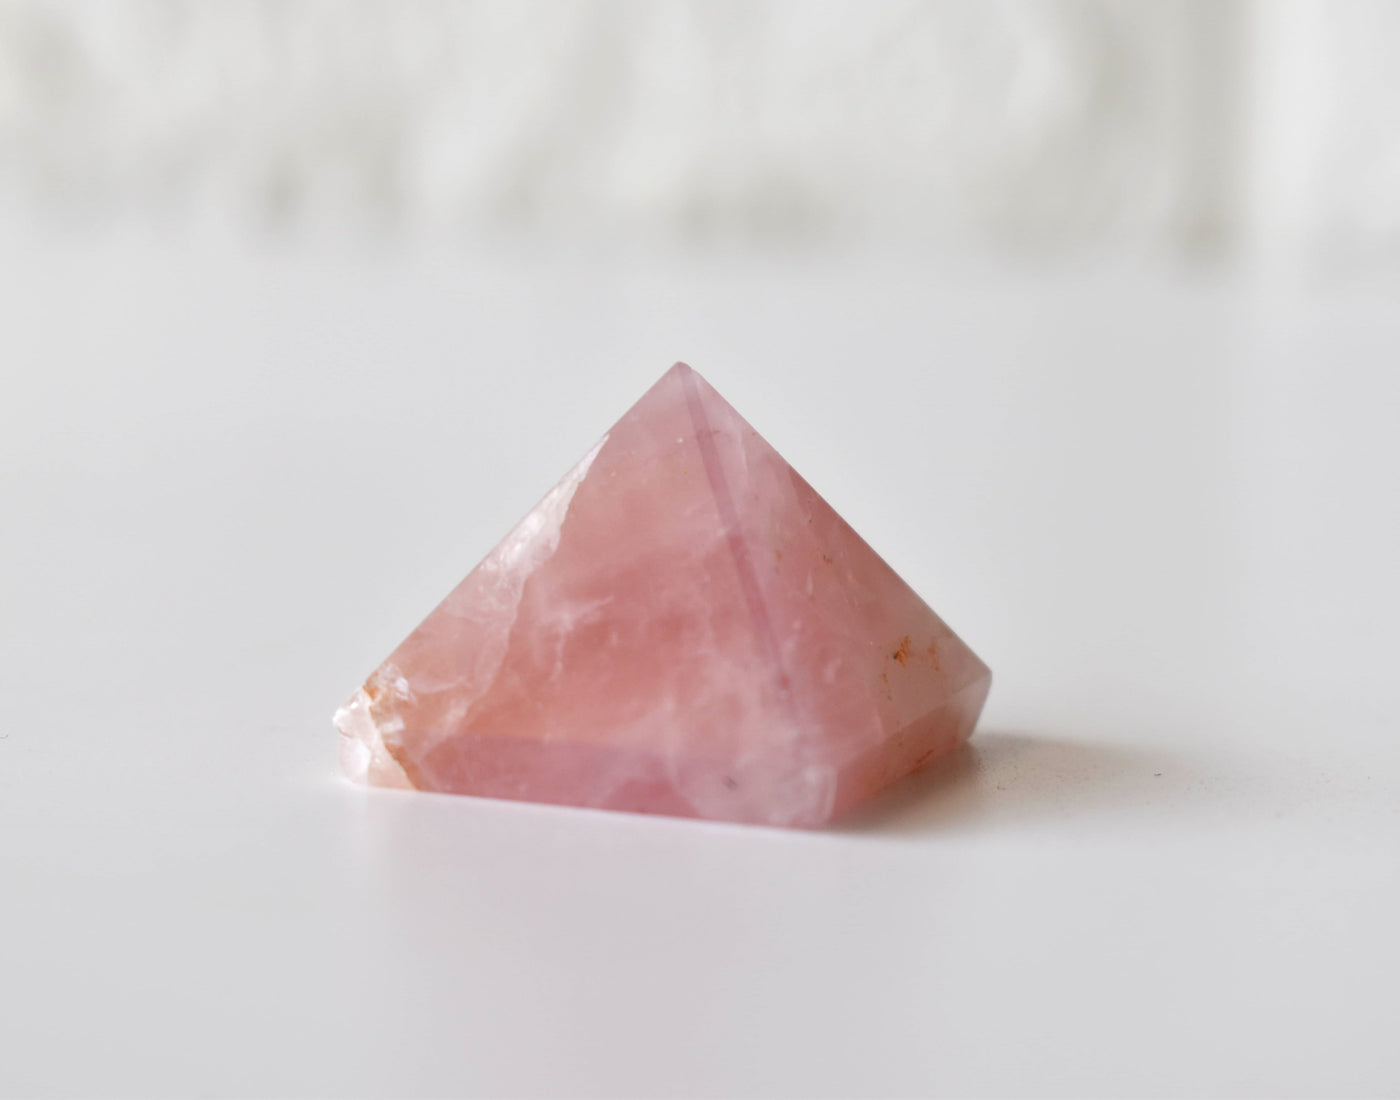 Rose Quartz Pyramids (Balance and Emotional Health)